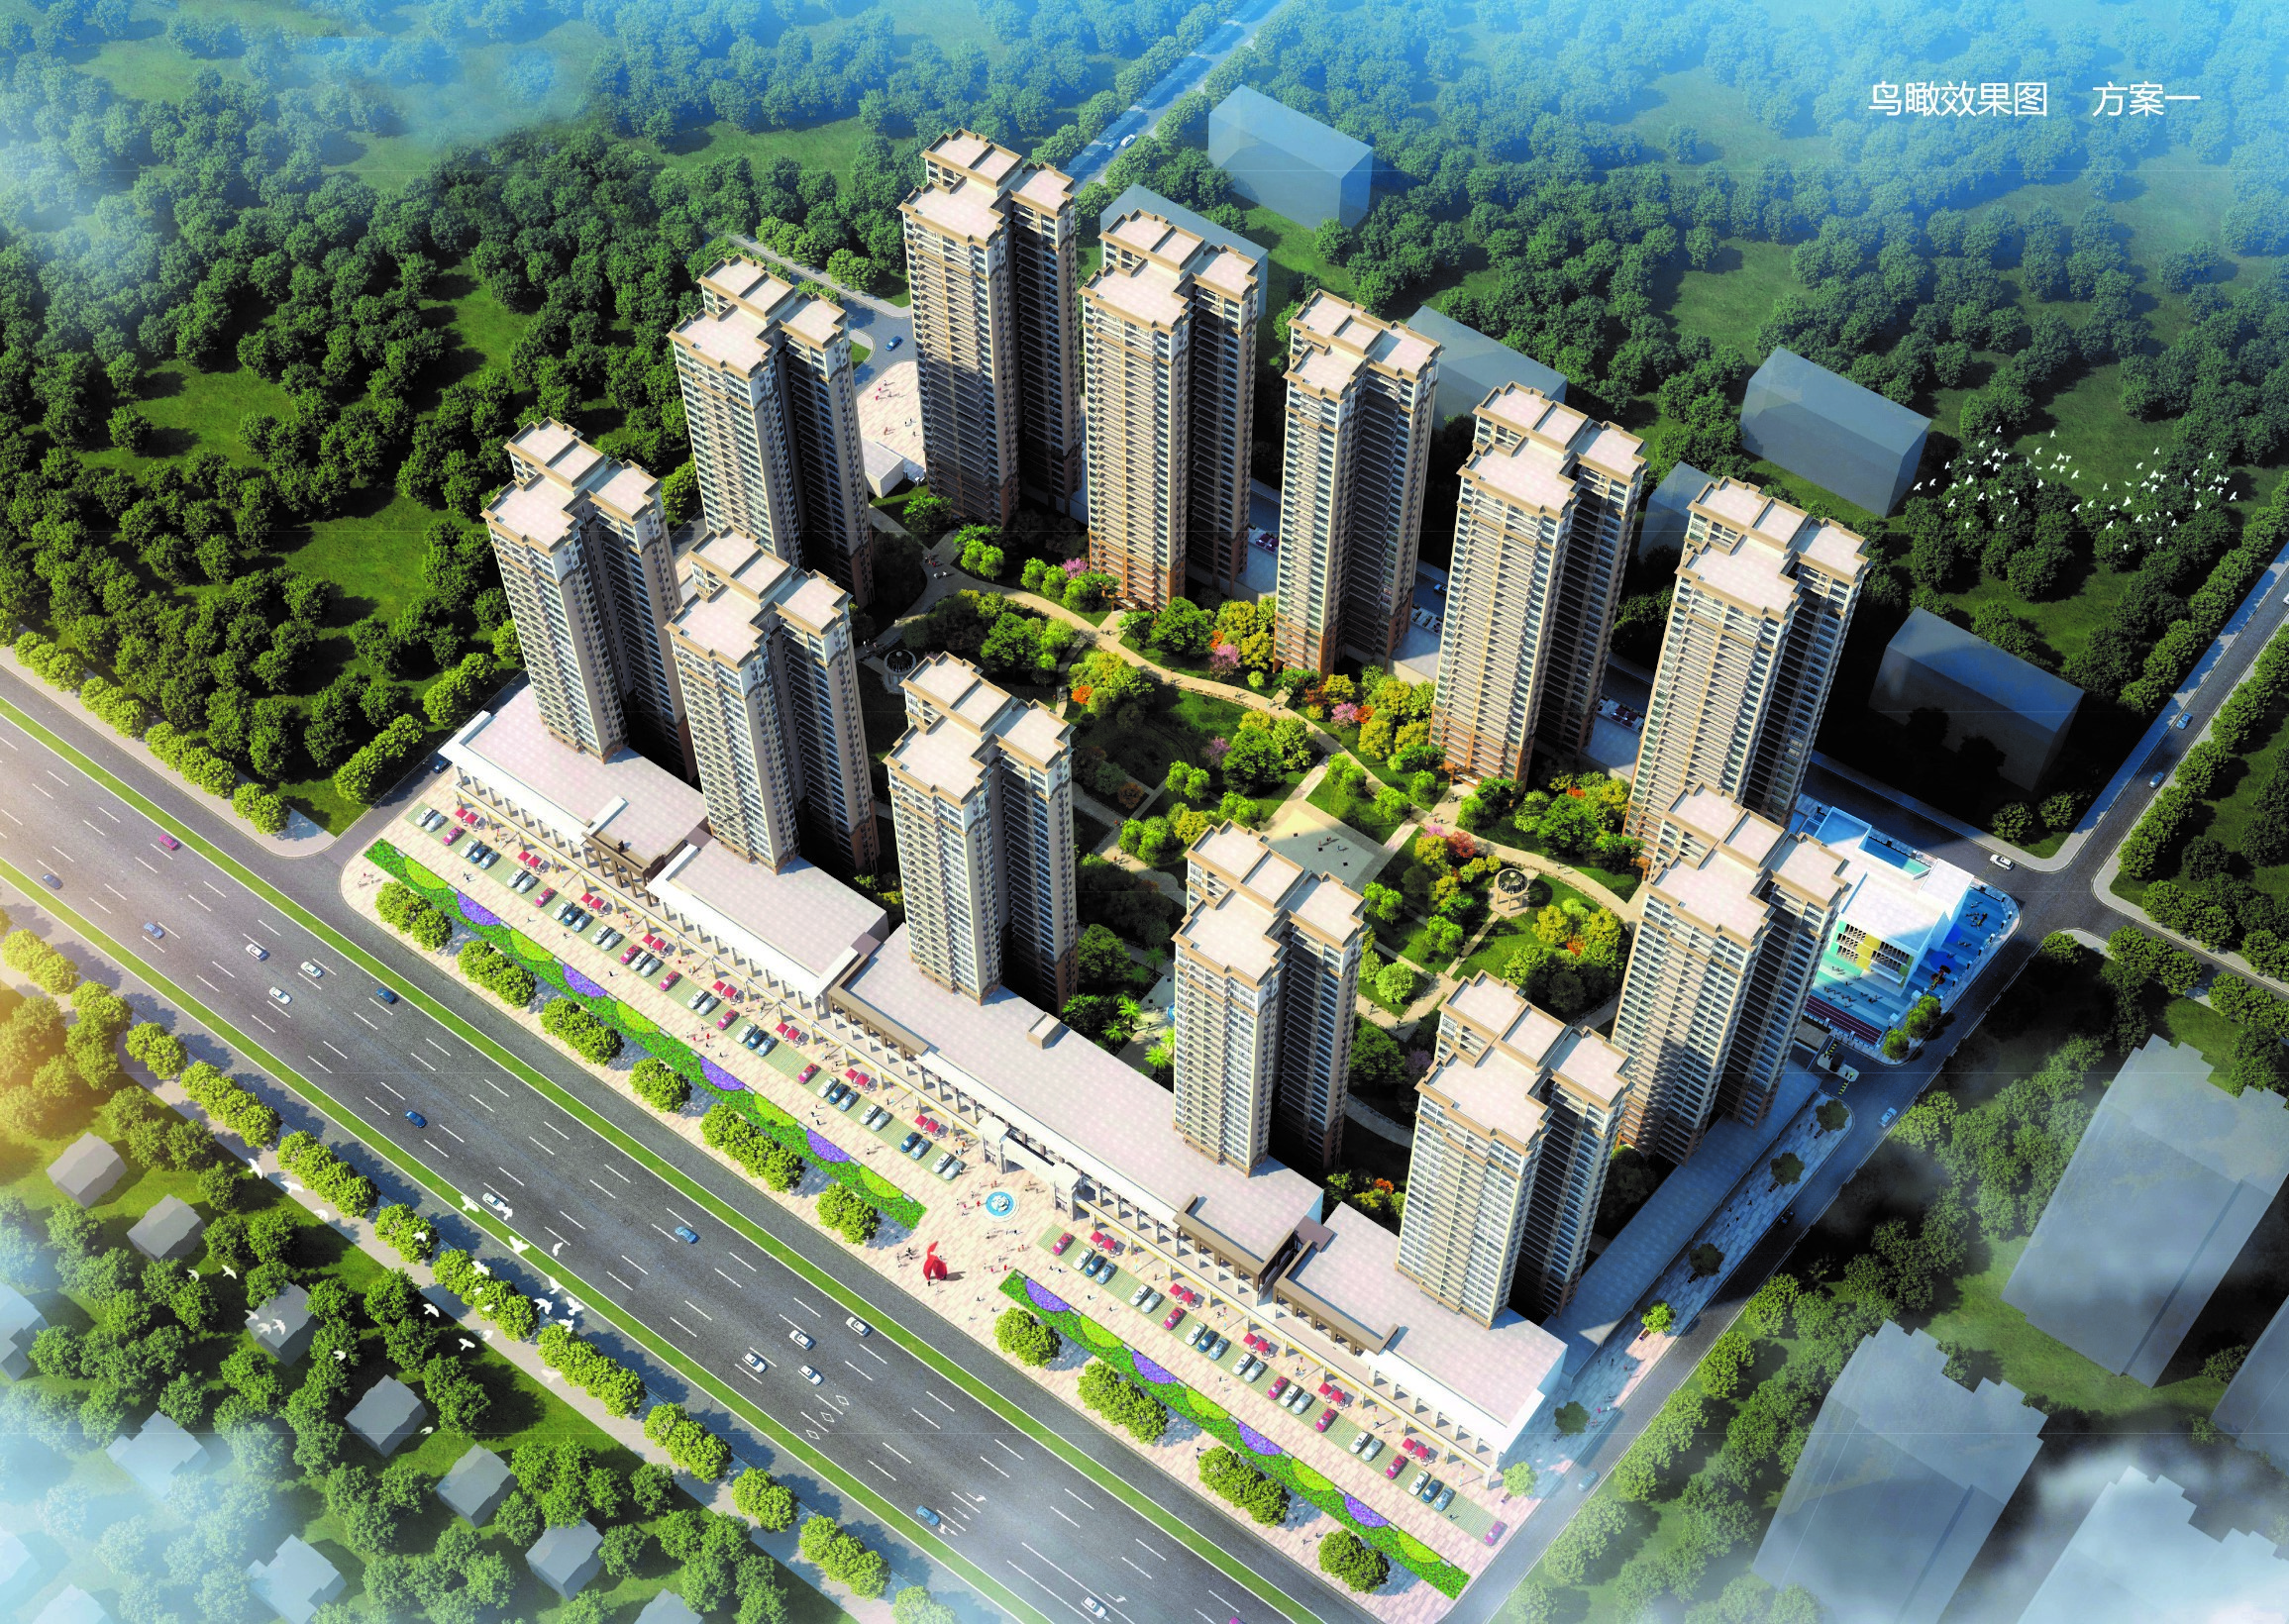 吴川市珺悦豪庭规划方案公示 拟建设12栋28-32层住宅楼